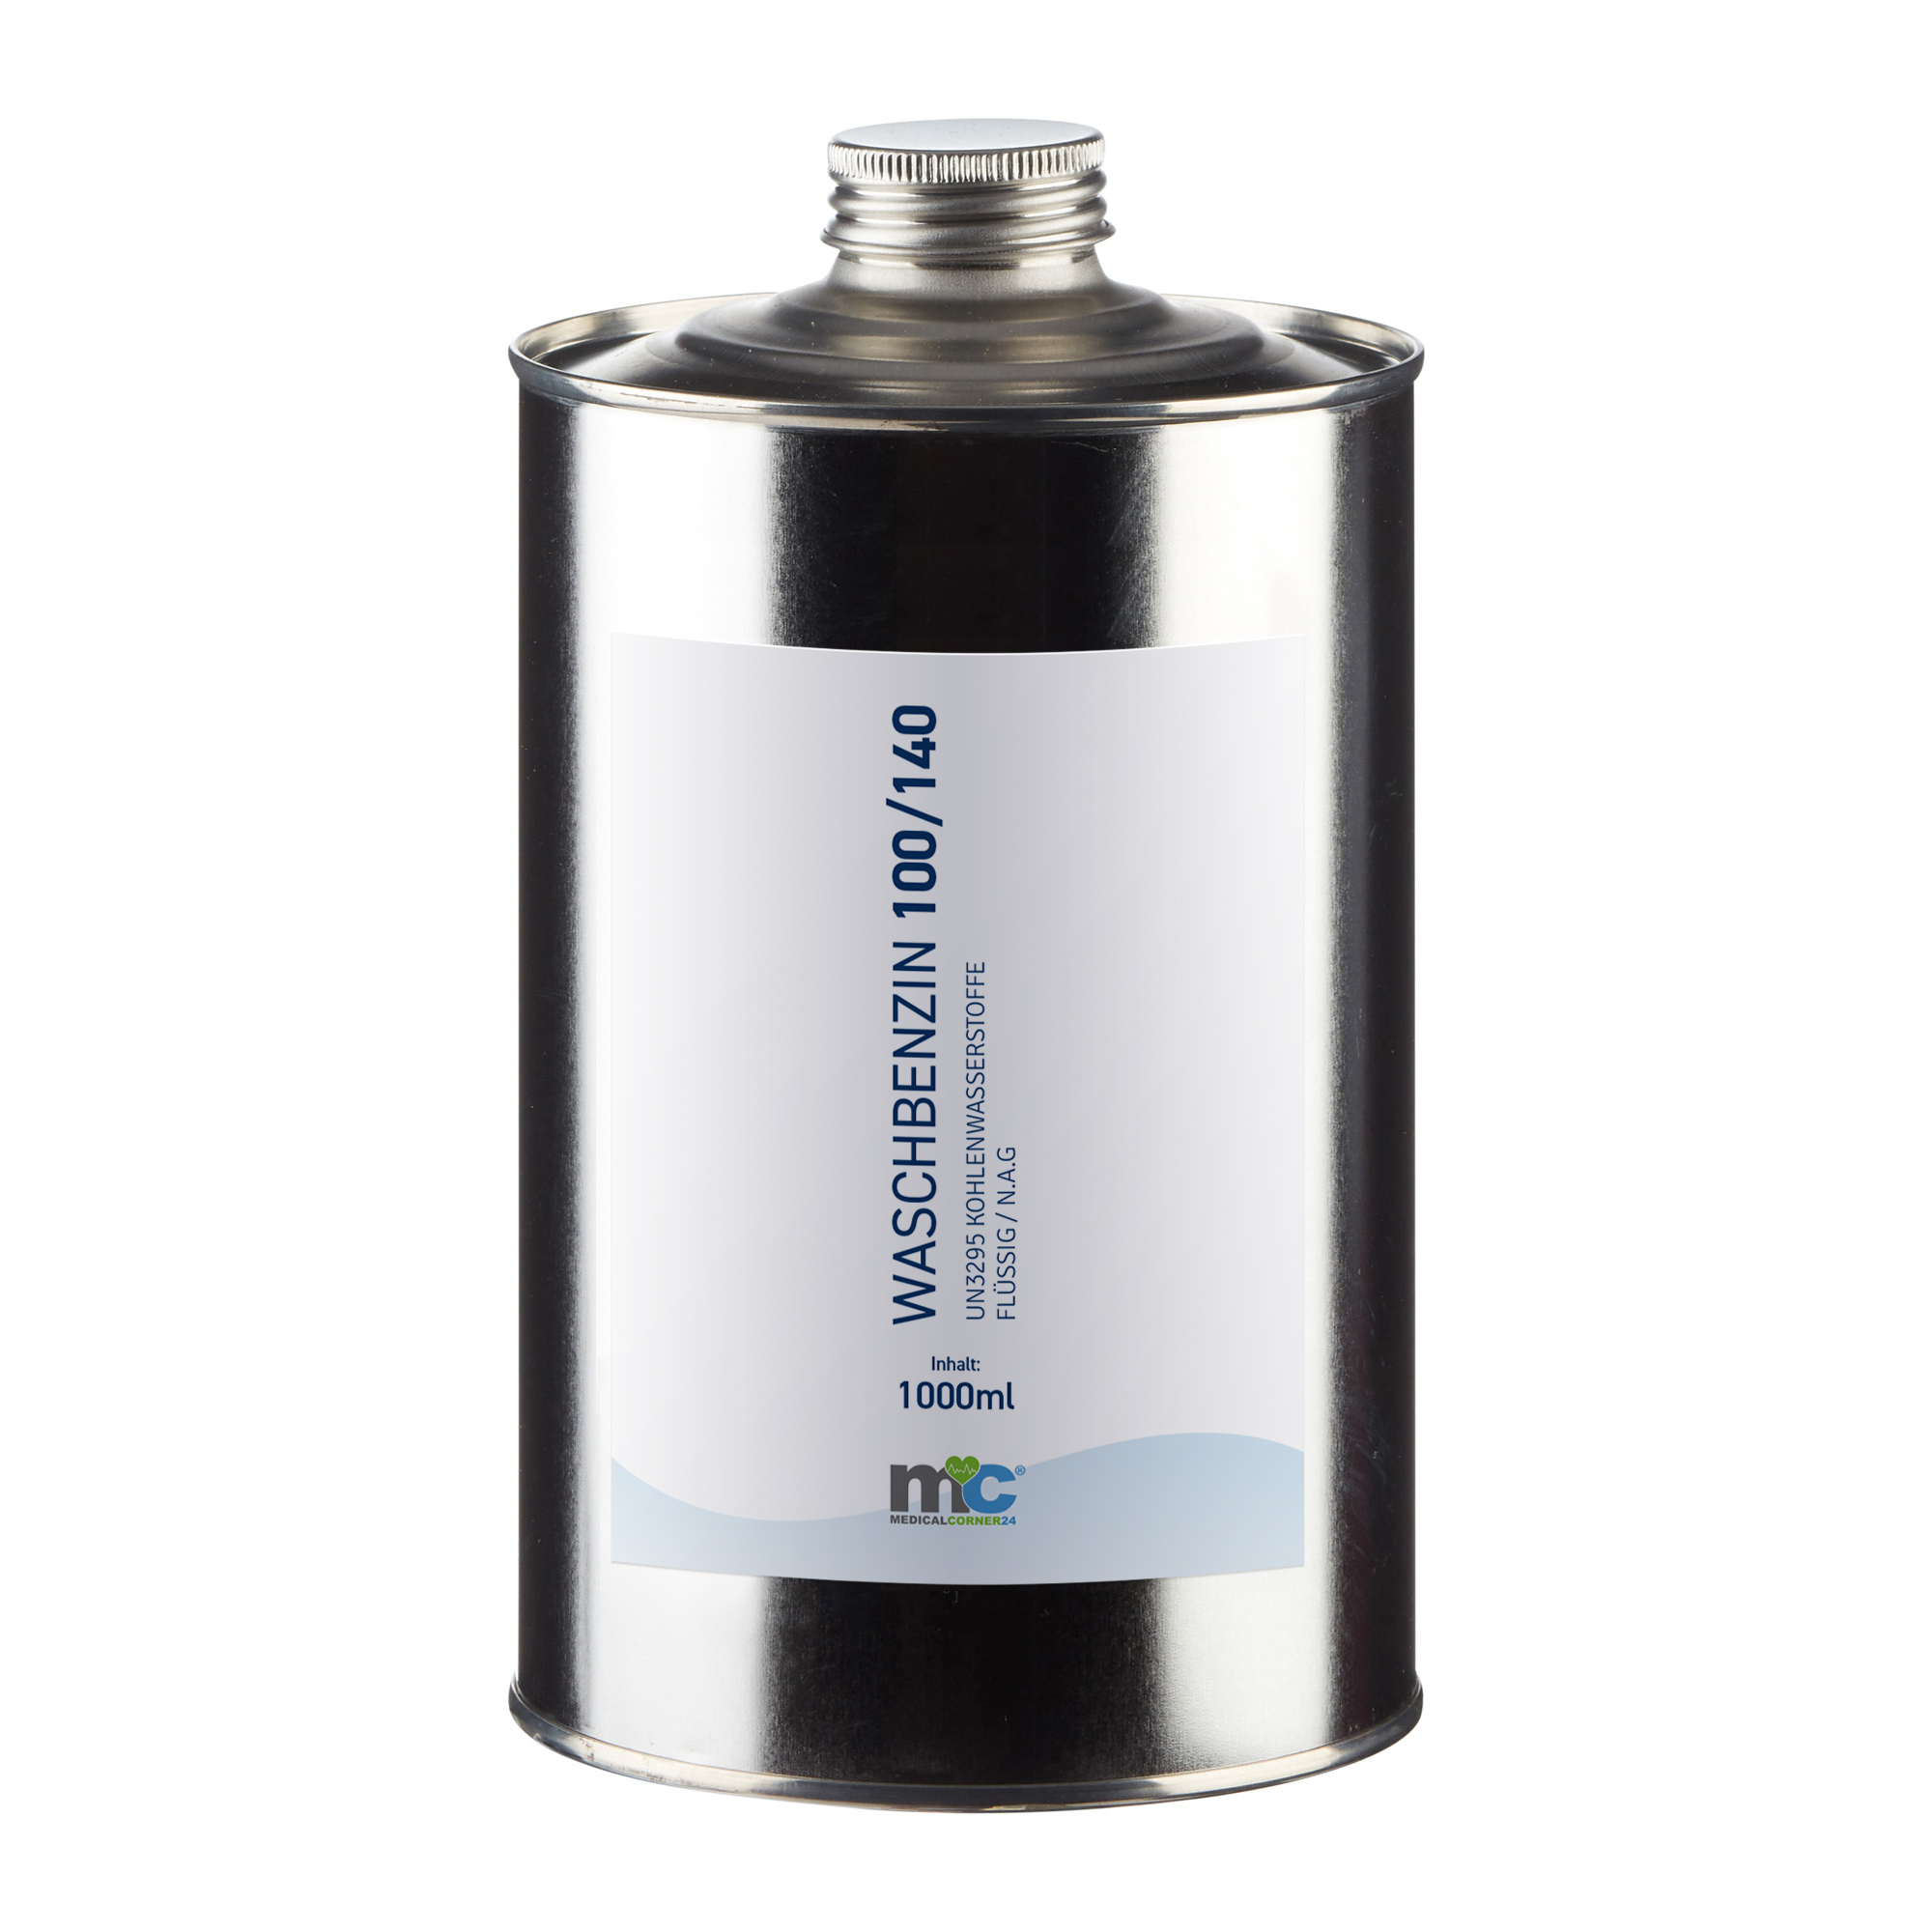 MC24 petroleum ether 100/140, UN3295, solvent, colorless, 1.000 ml